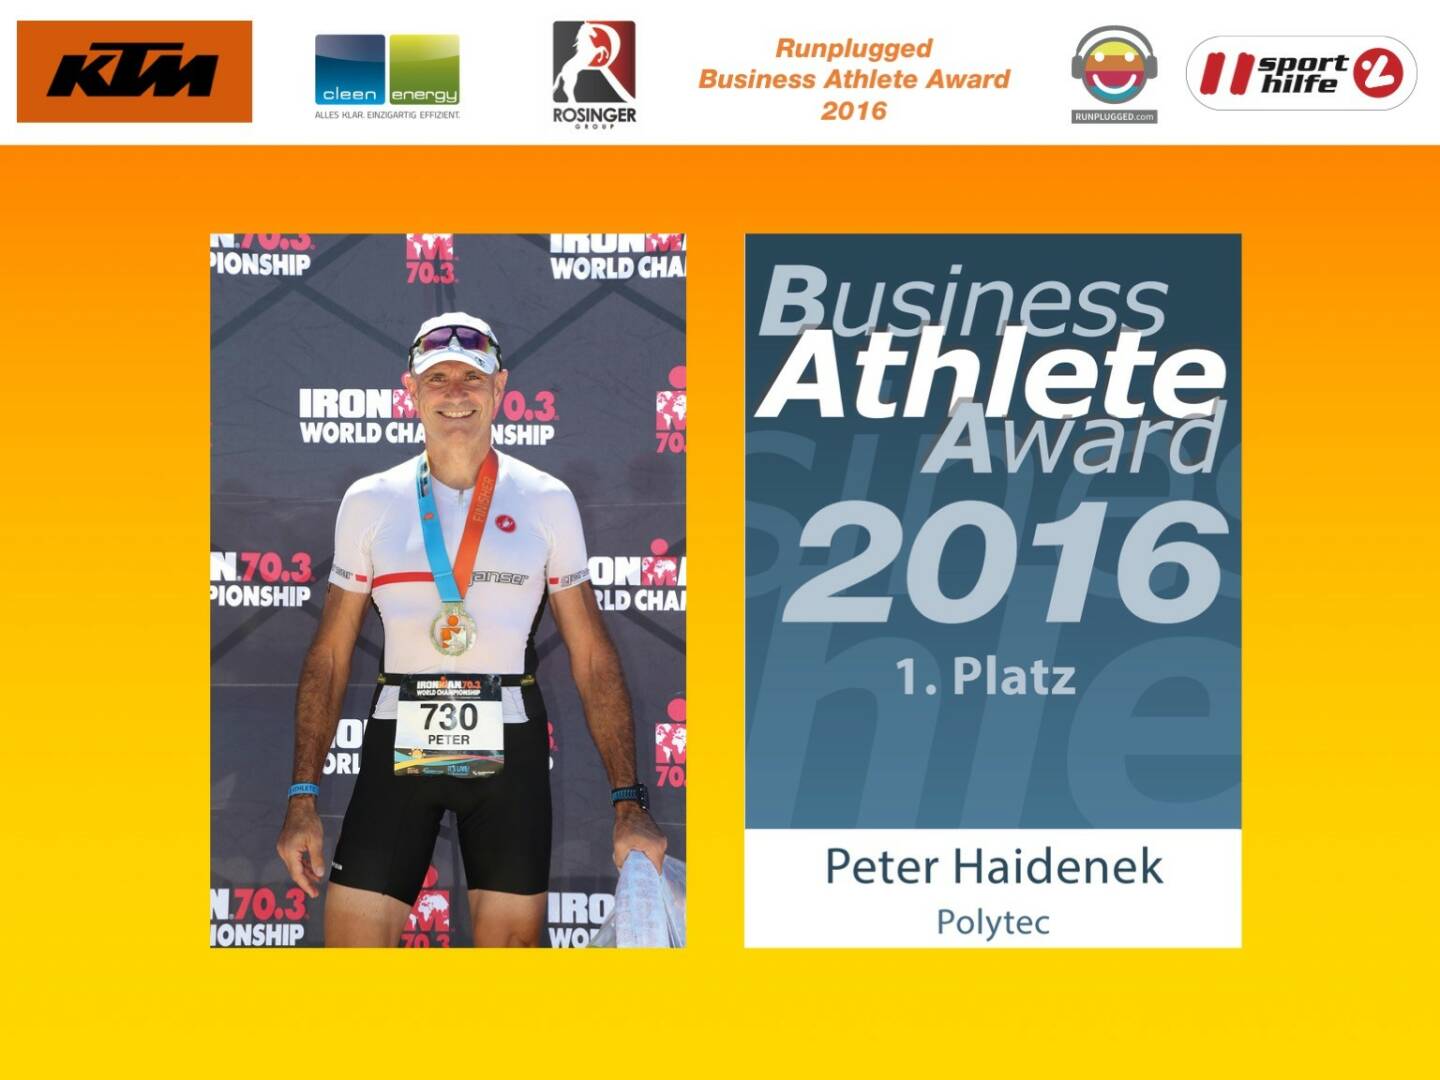 Business Athelete Award 2016 - Rang 1 Peter Haidenek